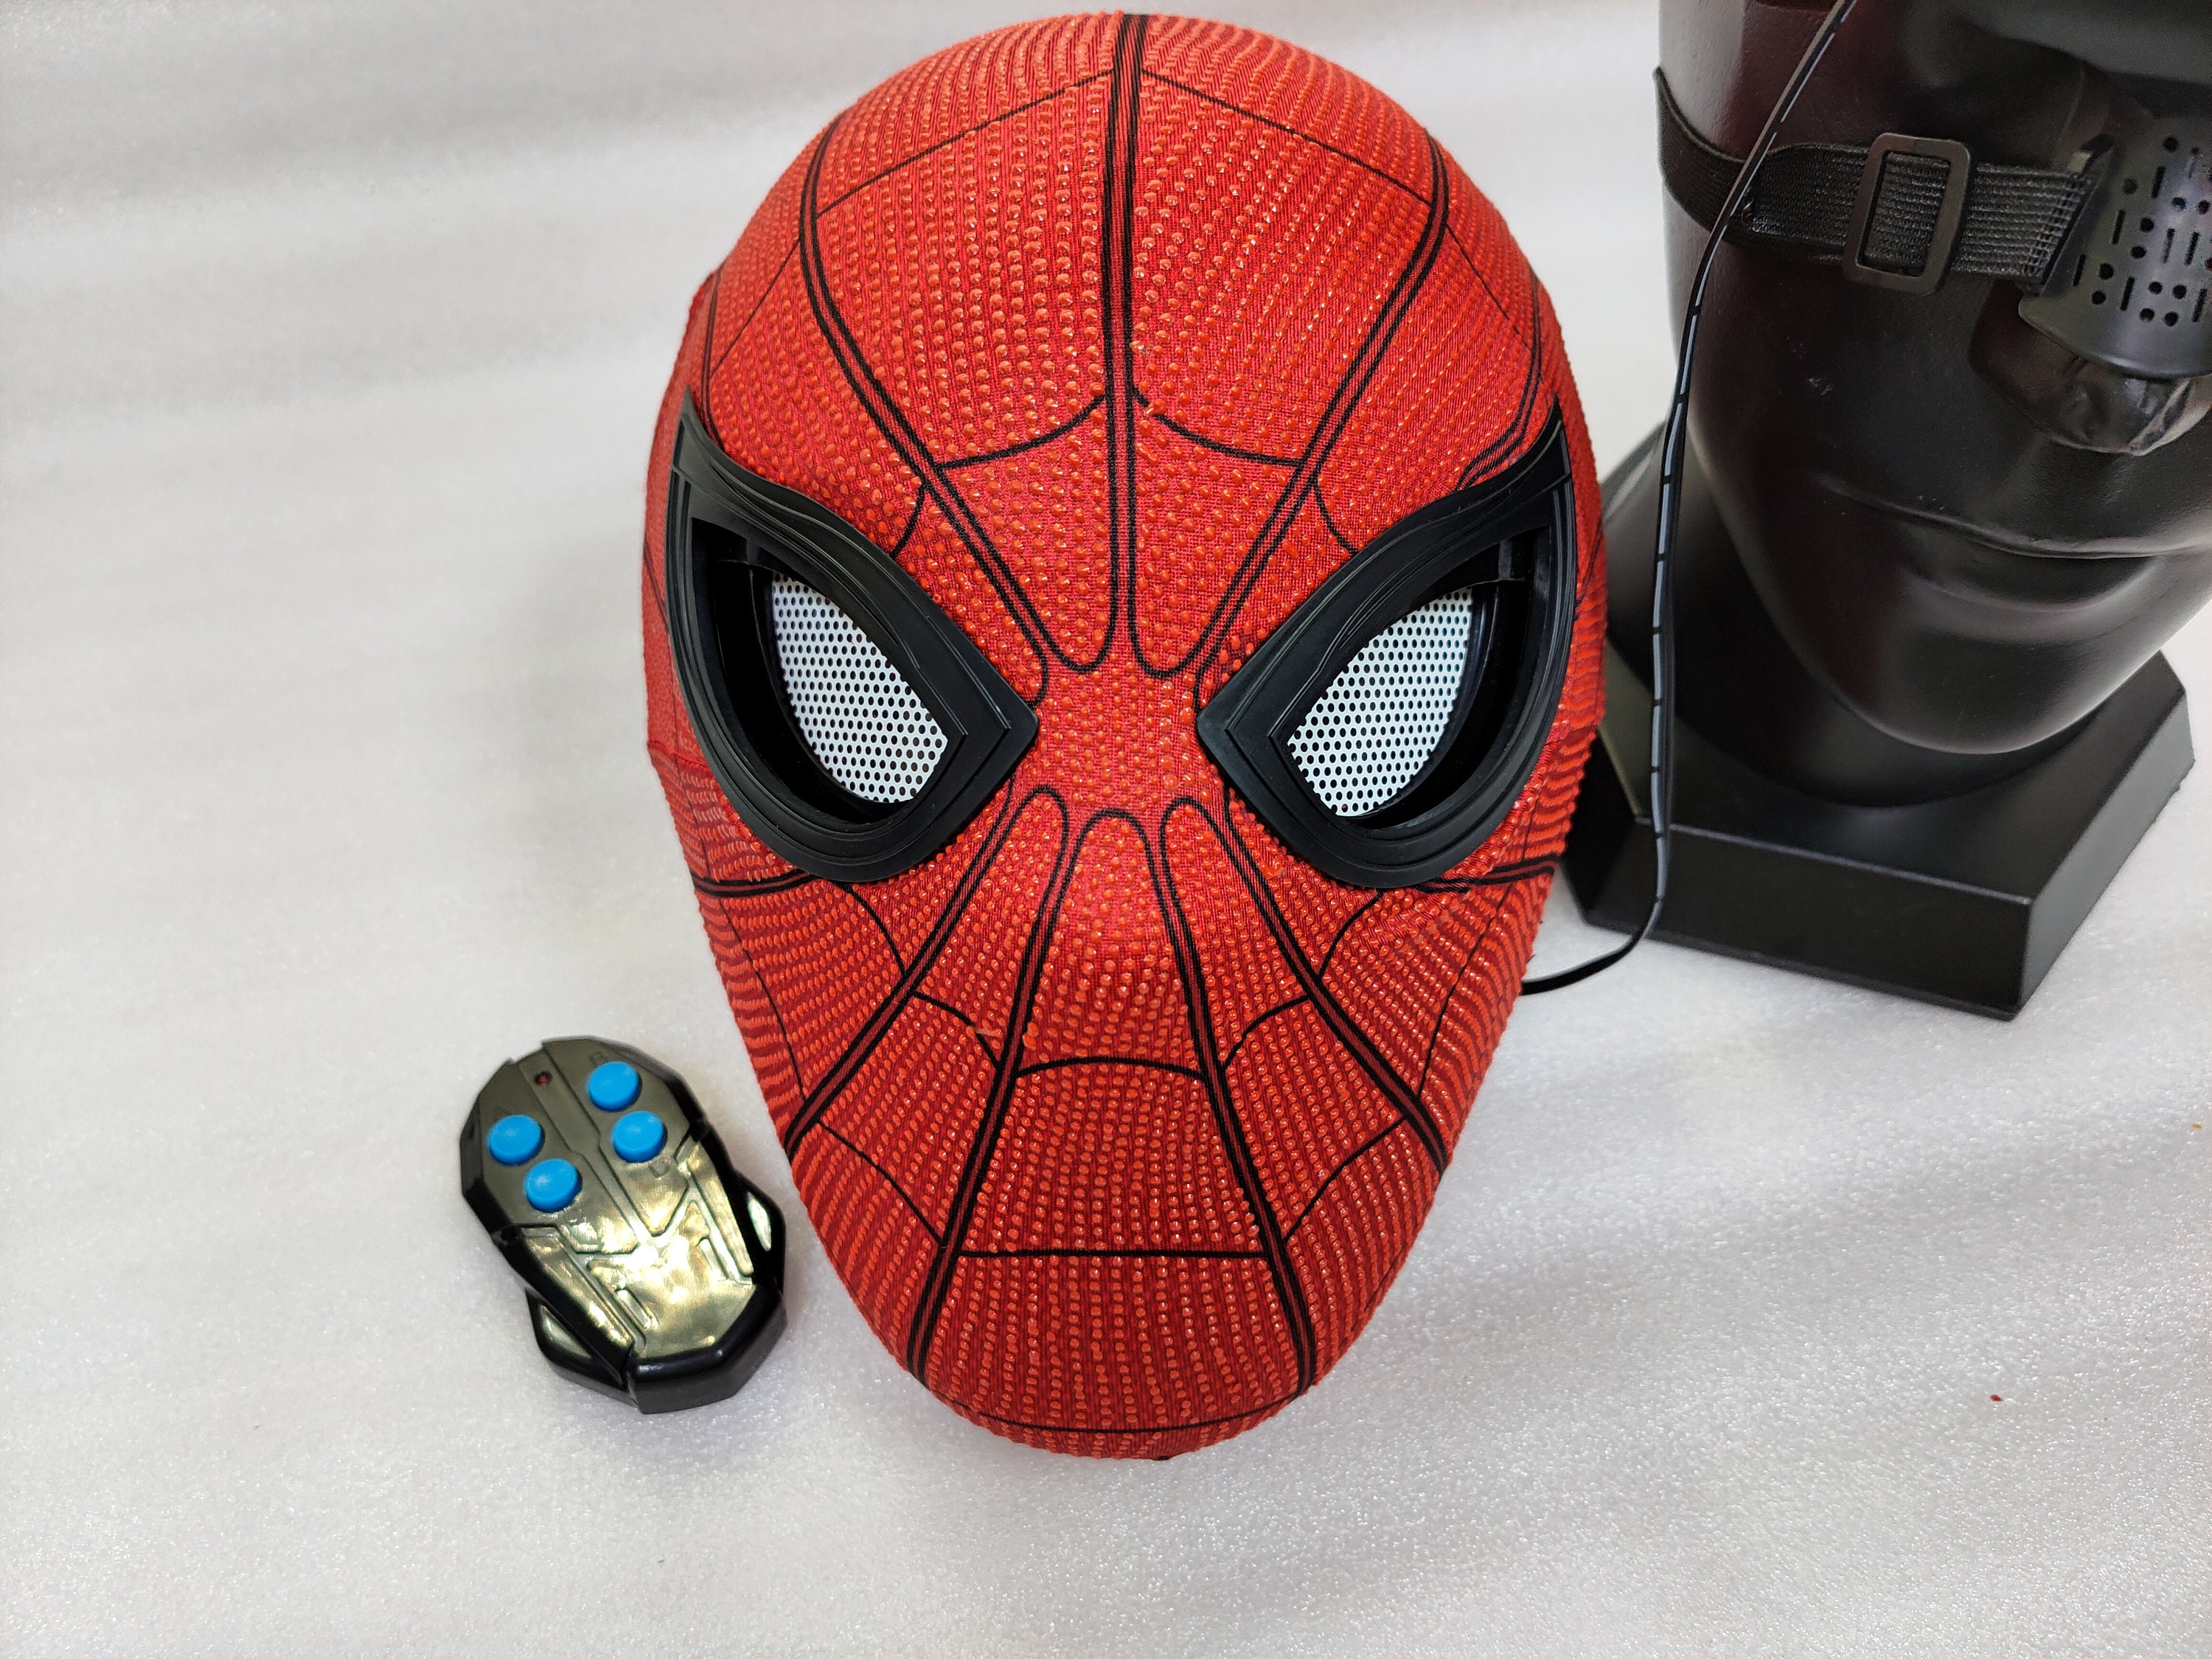 Comment dessiner le masque de Spiderman ?